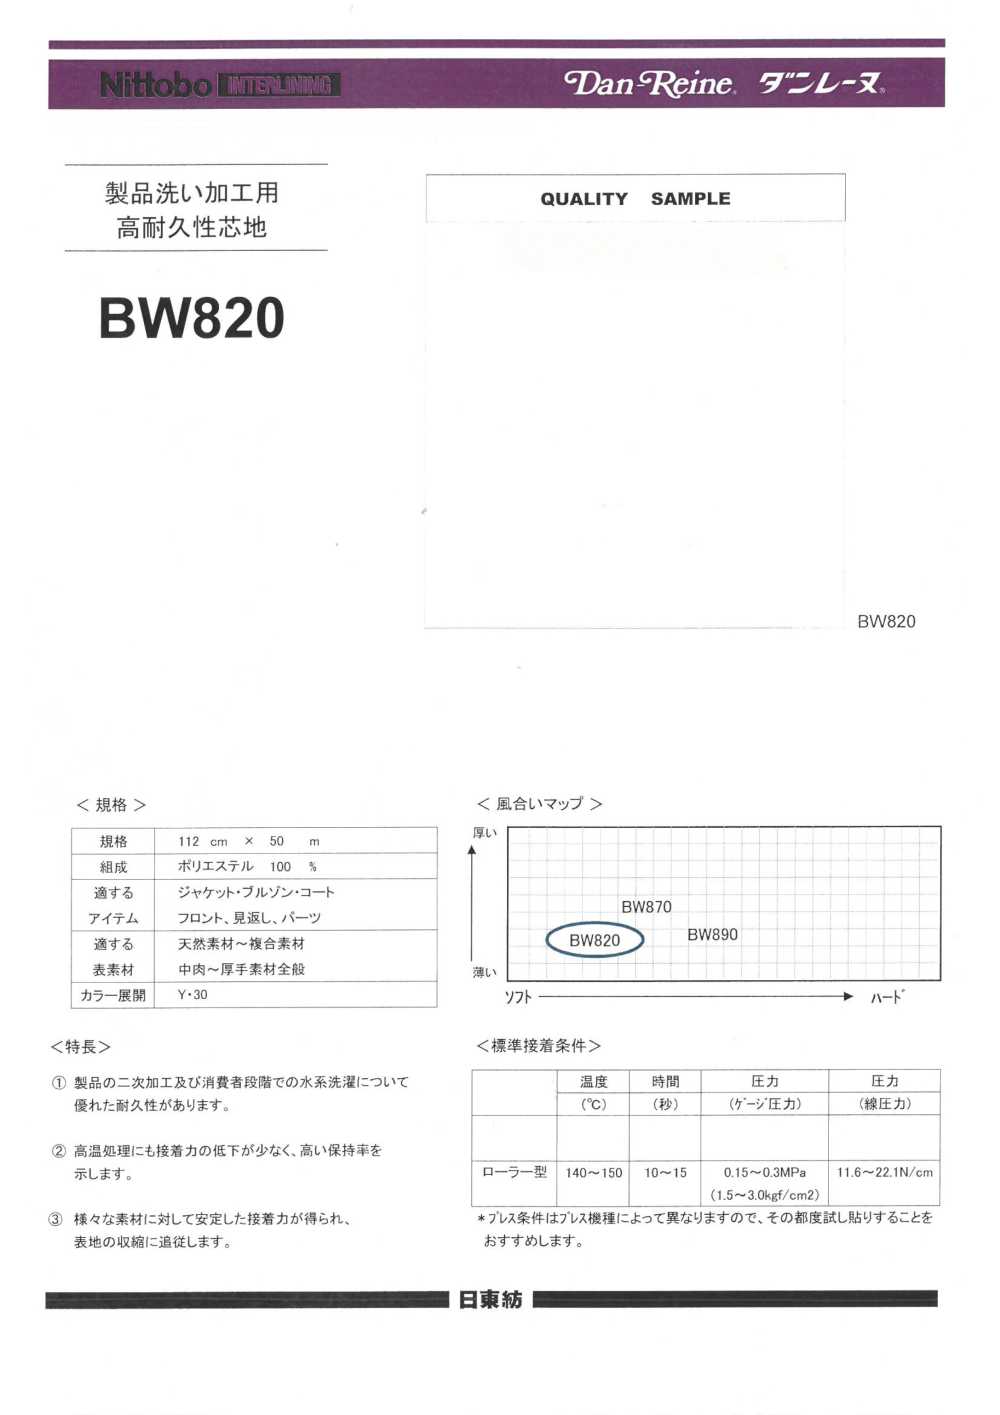 BW820 제품세척 가공・수계 세탁 내구심지(30D) 닛토보 (닛토보인터라이닝)